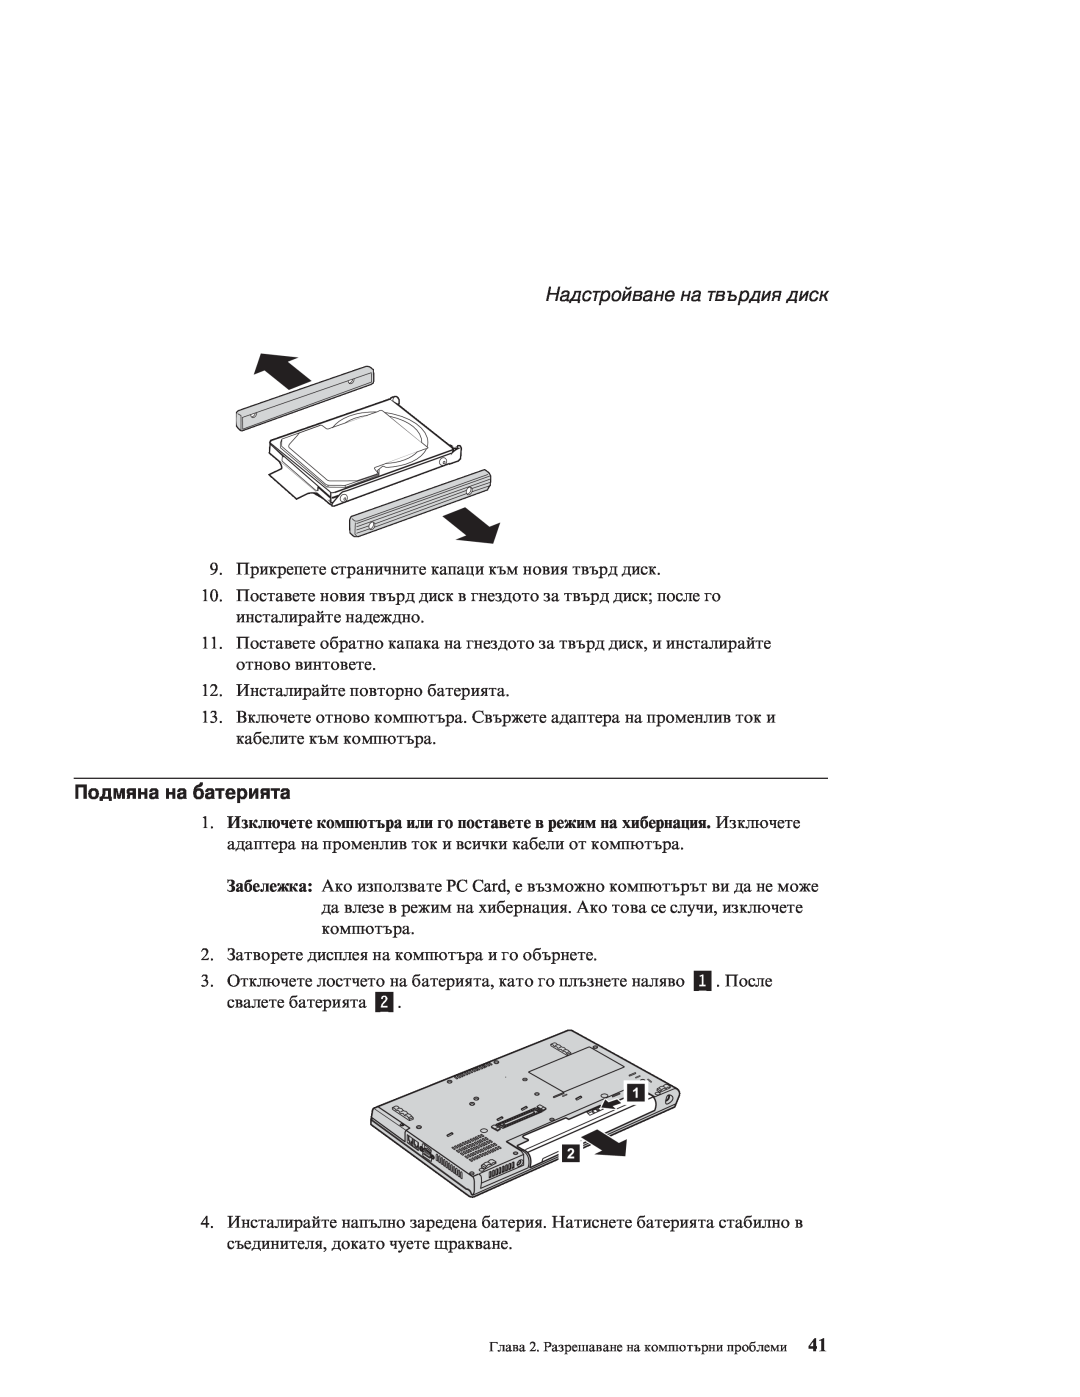 Lenovo Z60M manual Надстройване на твърдия диск, Подмяна на батерията 